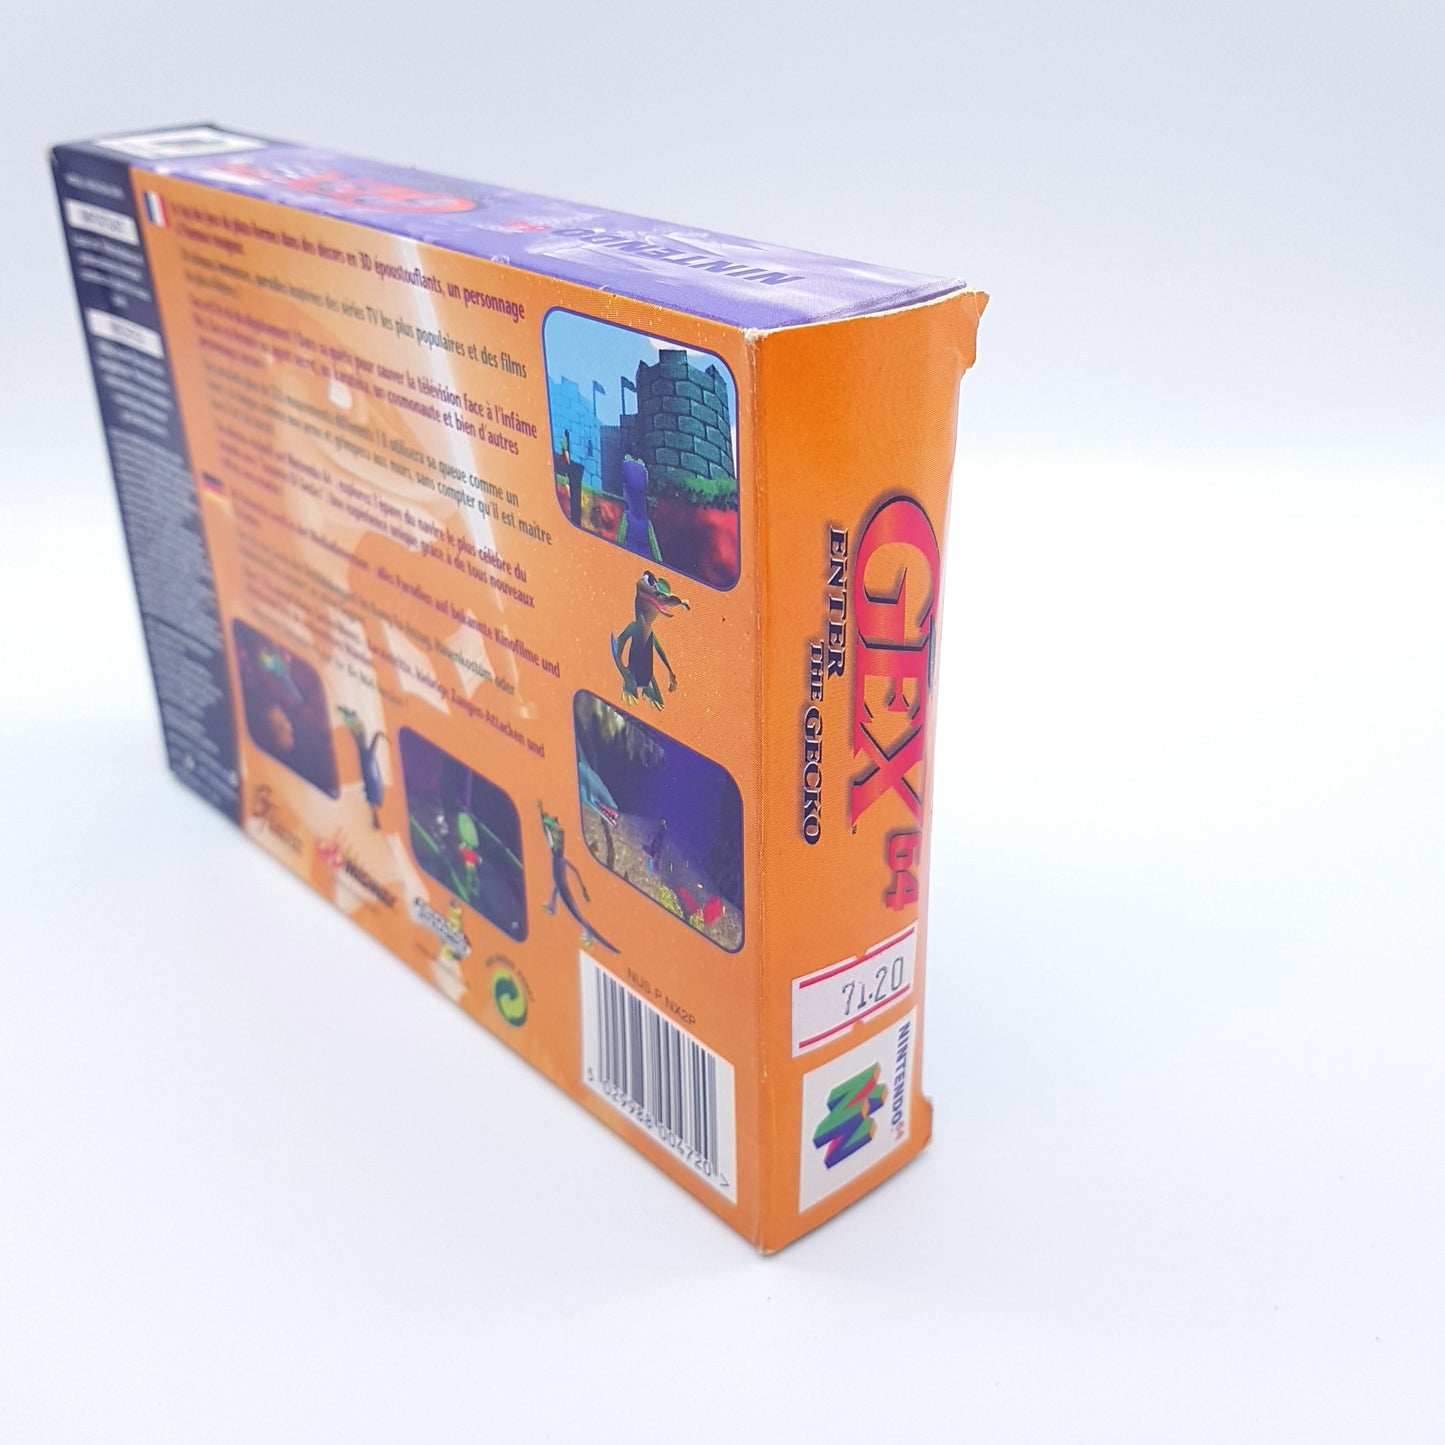 Nintendo 64 - N64 - GEX 64 - PAL - inkl OVP & Anleitung